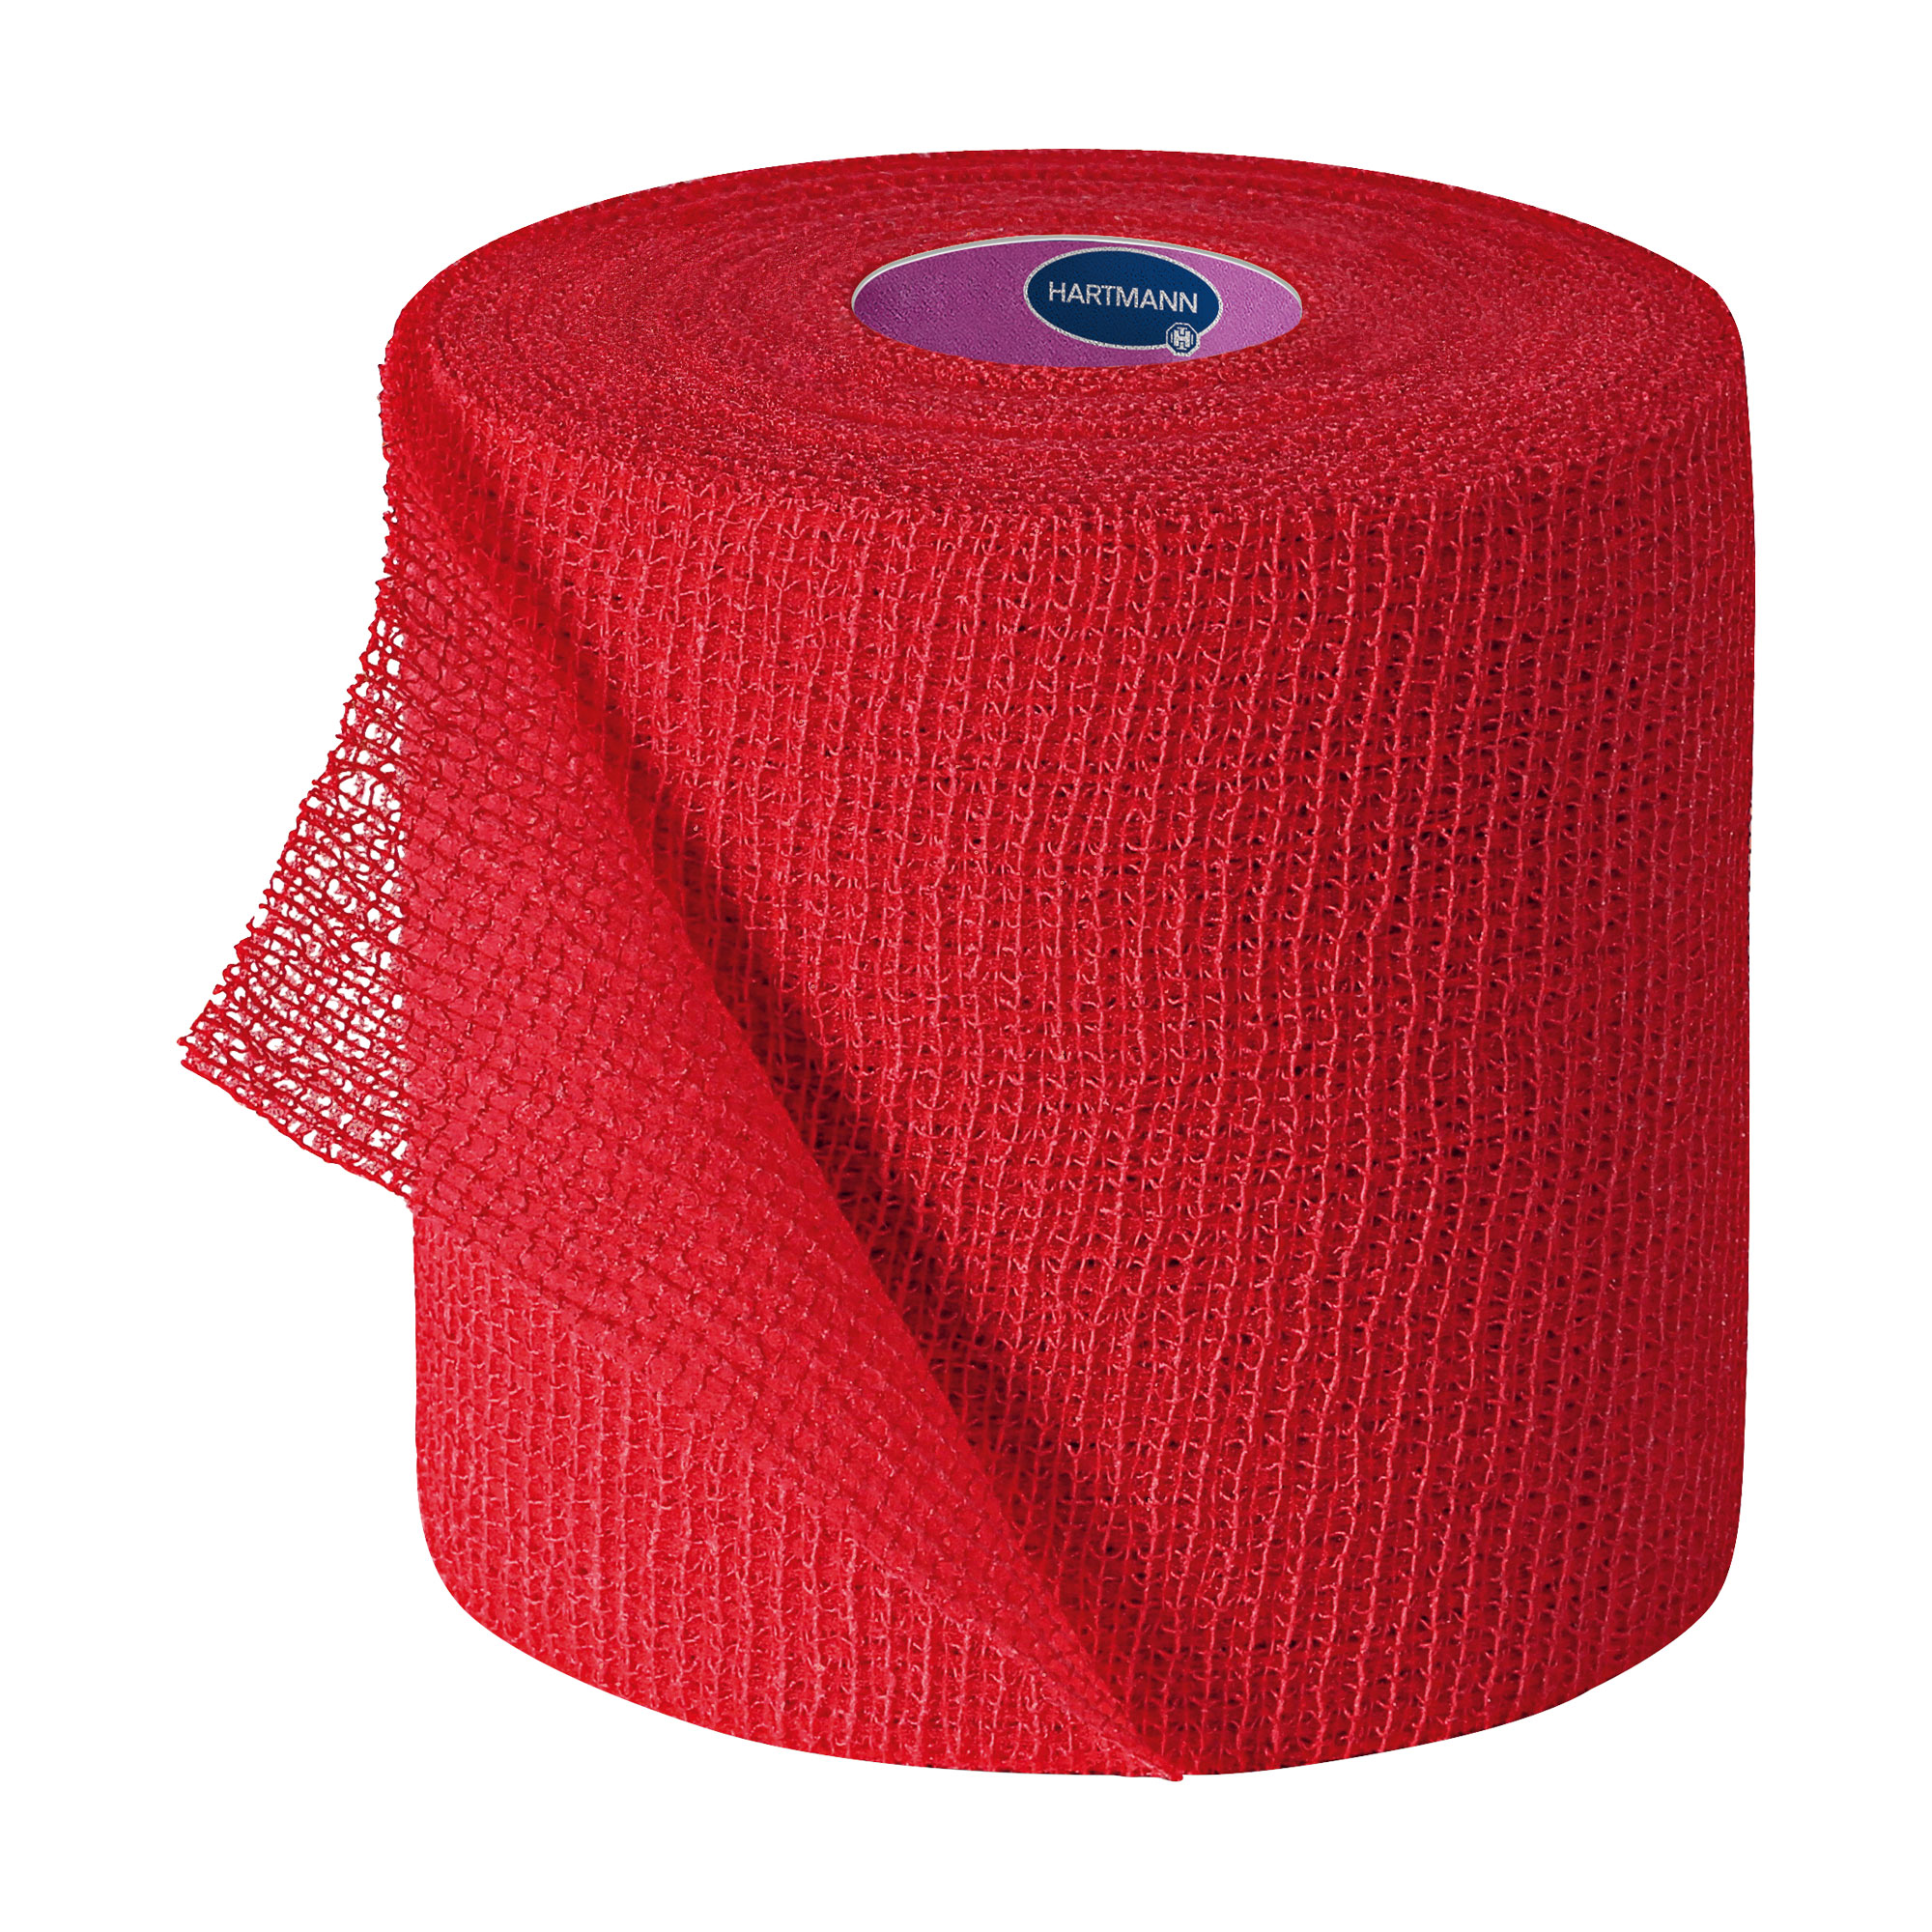 Einzeln verpackte kohäsive, elastische Fixierbinden. Mit dem zweifachen Hafteffekt. Farbe: rot.